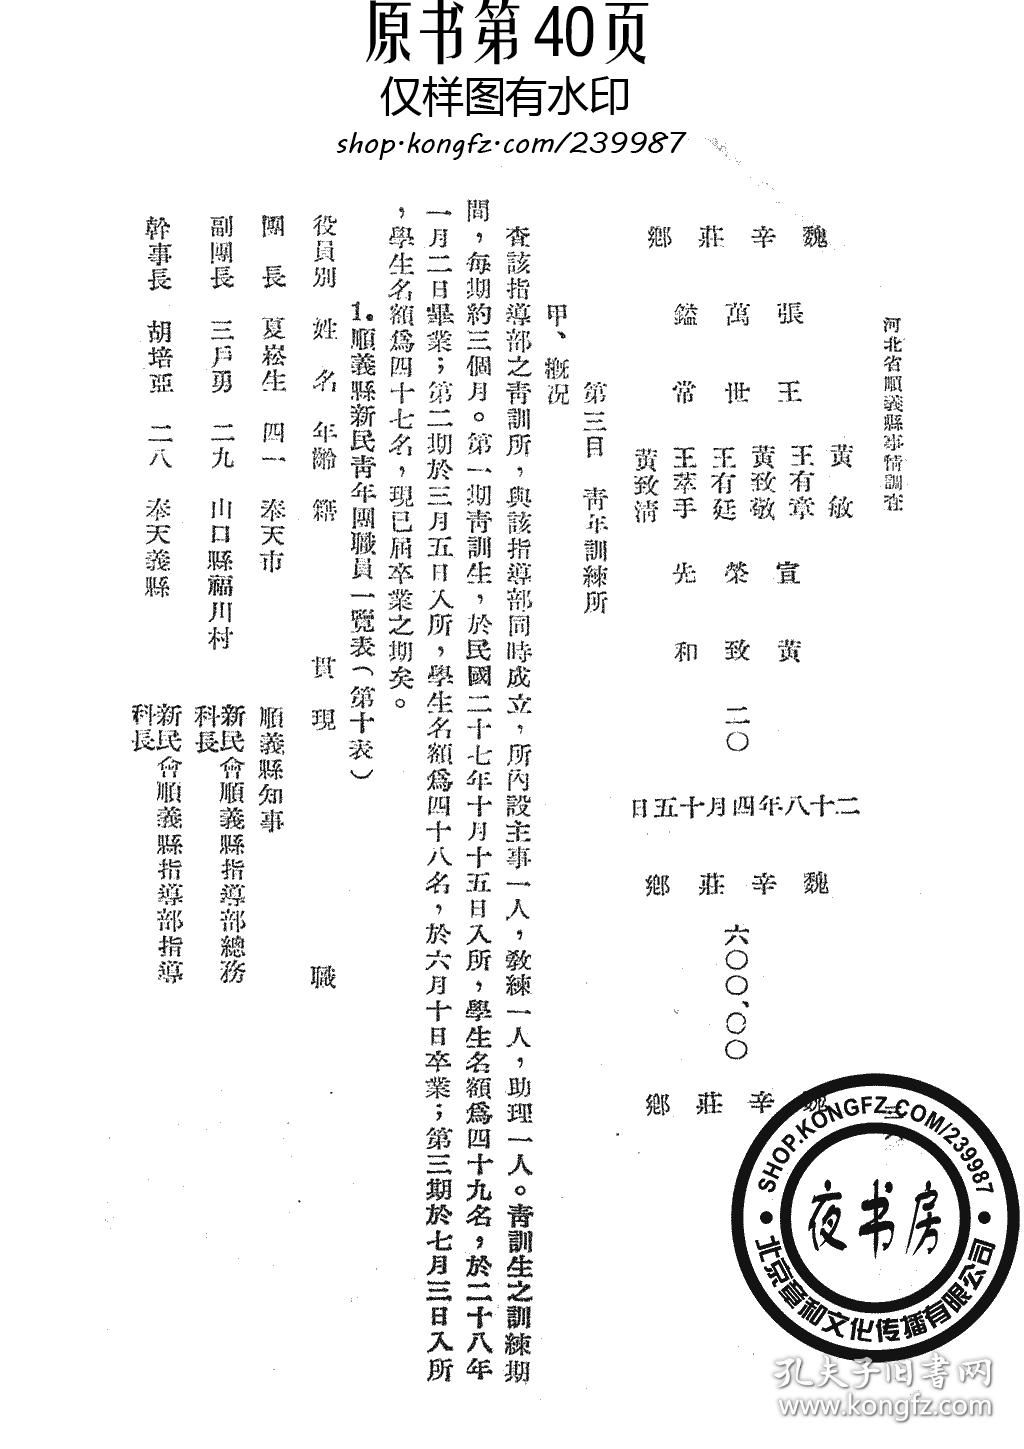 河北省顺义县事情-1941年版-(复印本)图片